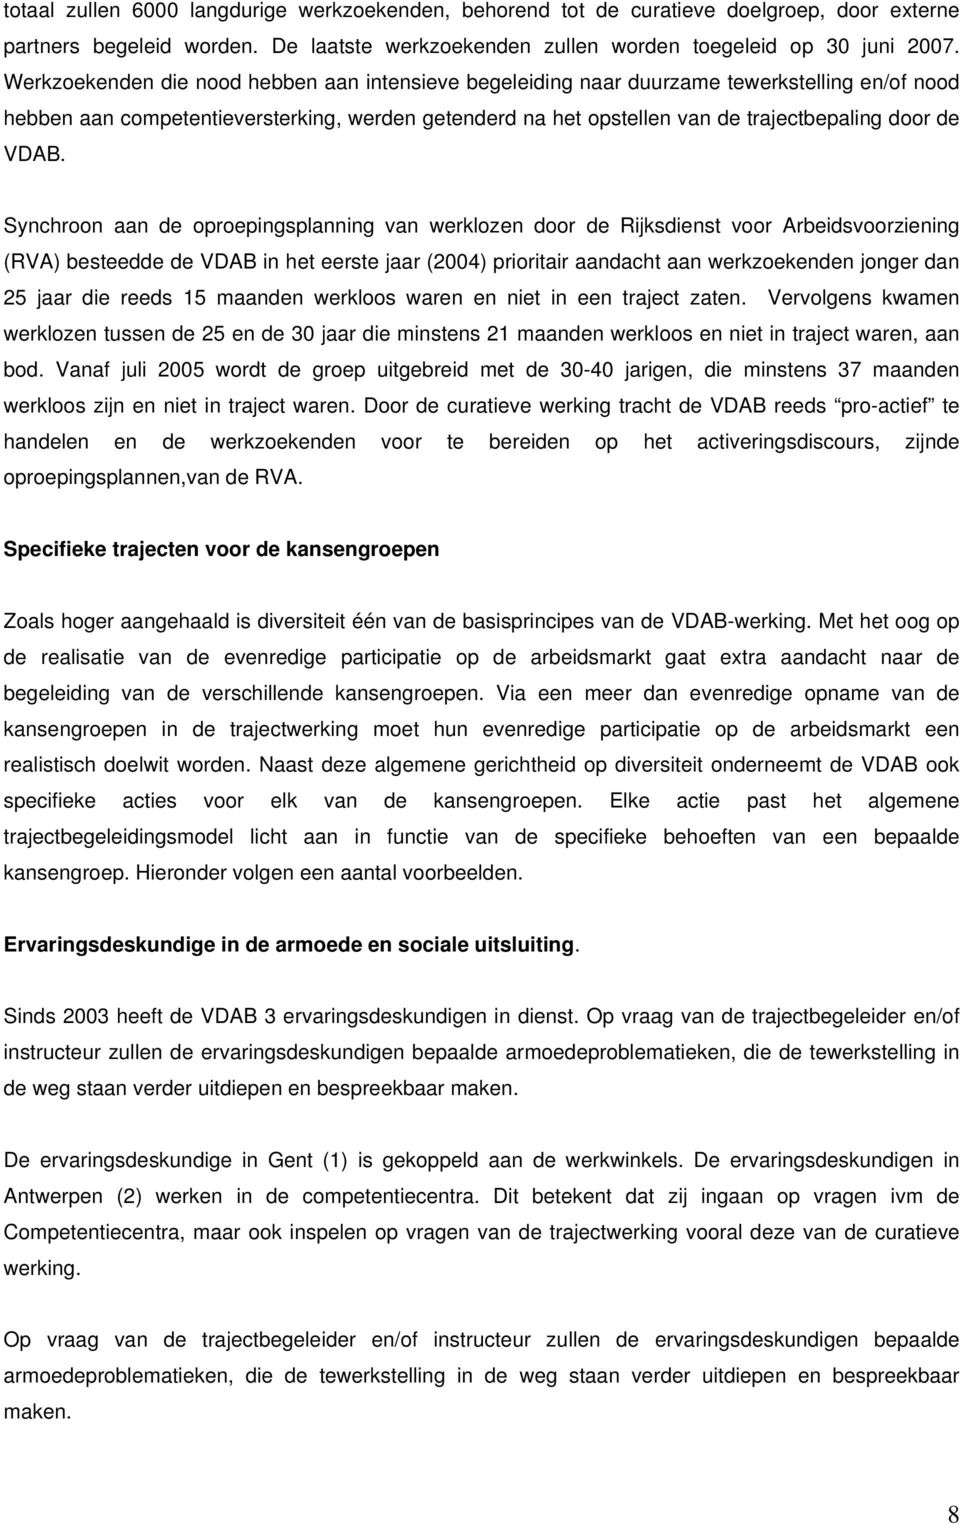 VDAB. Synchroon aan de oproepingsplanning van werklozen door de Rijksdienst voor Arbeidsvoorziening (RVA) besteedde de VDAB in het eerste jaar (2004) prioritair aandacht aan werkzoekenden jonger dan